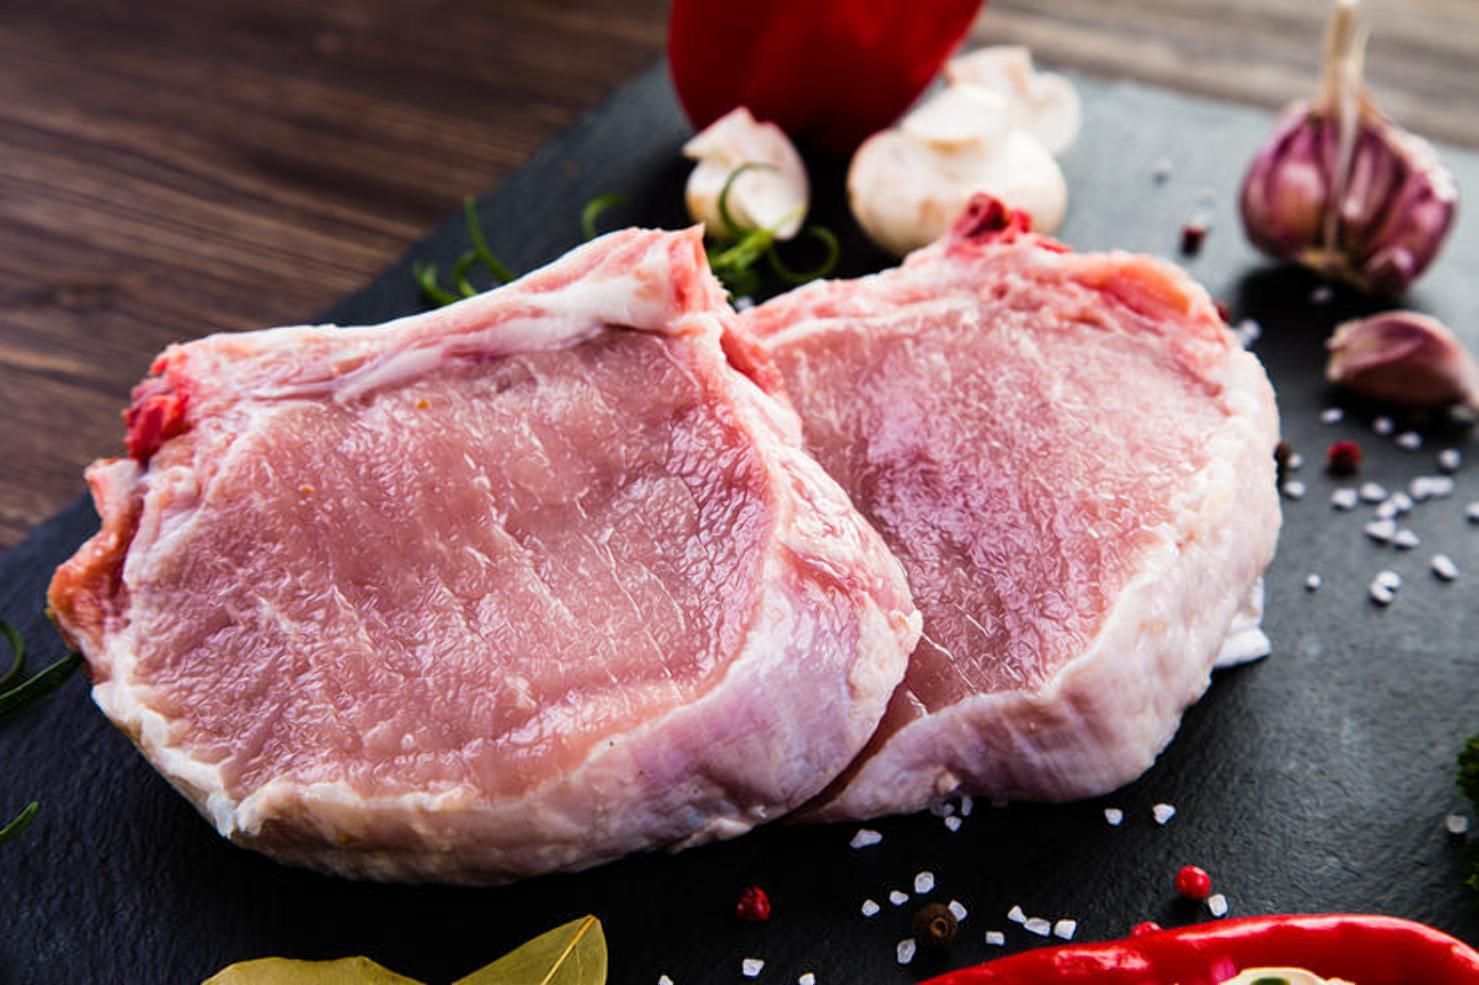 Криза ринку свинини: у скільки разів імпорт перевищує експорт - Агро